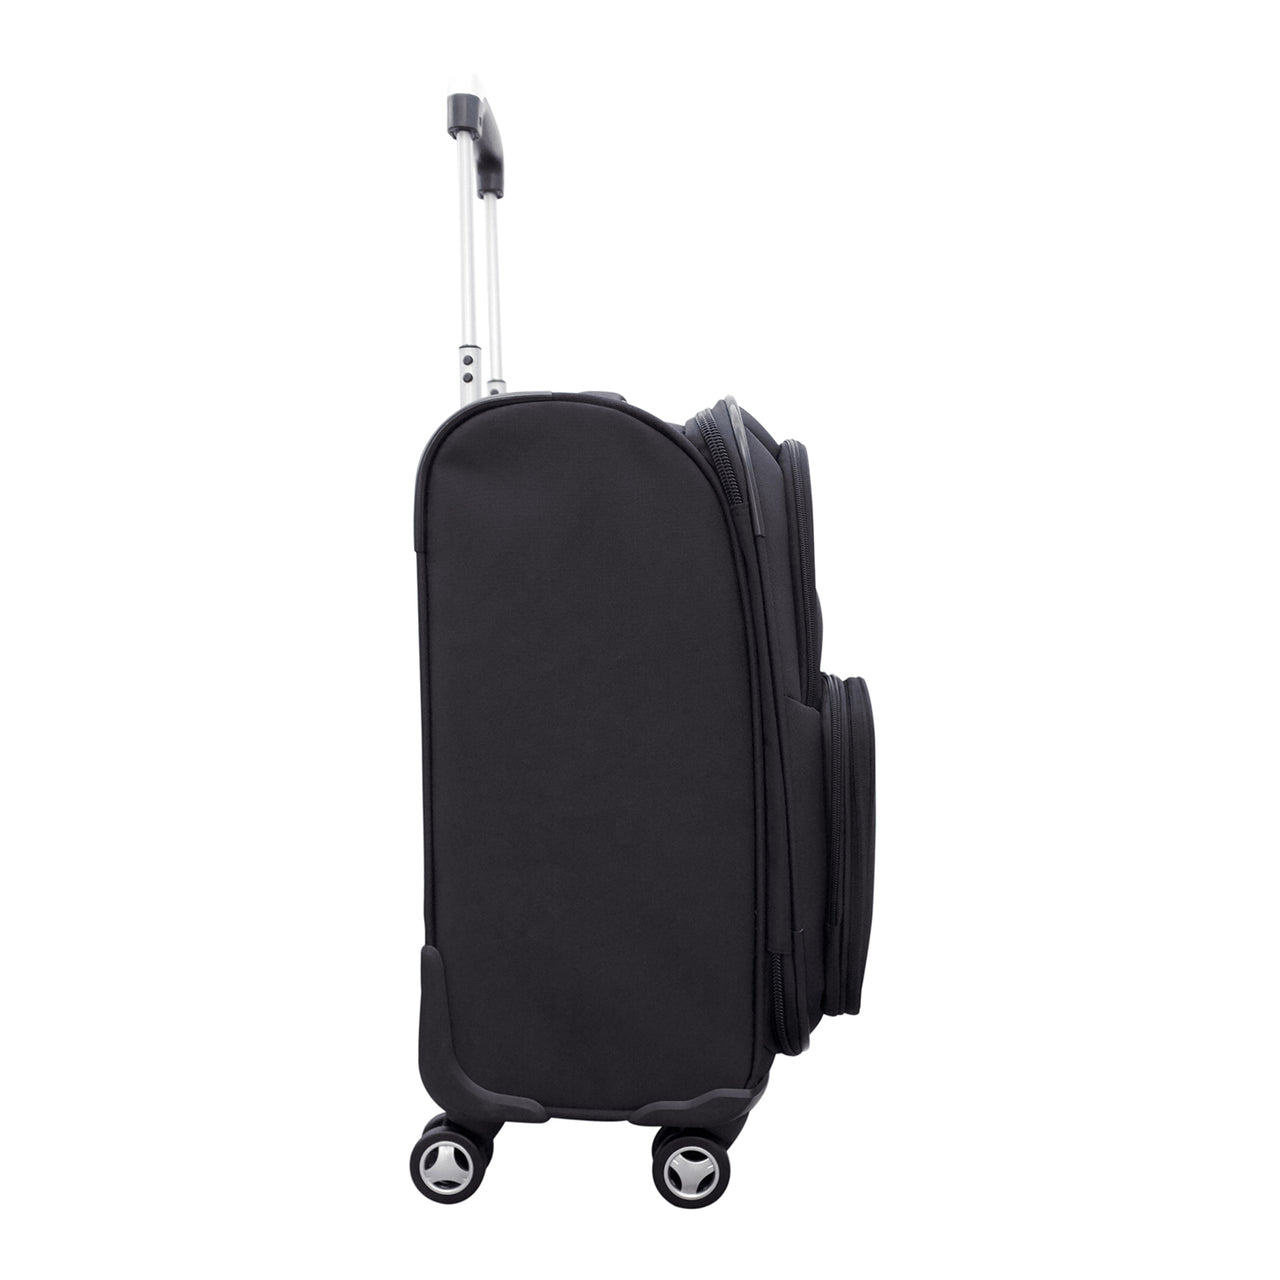 Thunder Luggage | Oklahoma City Thunder 20" Carry-on Spinner Luggage